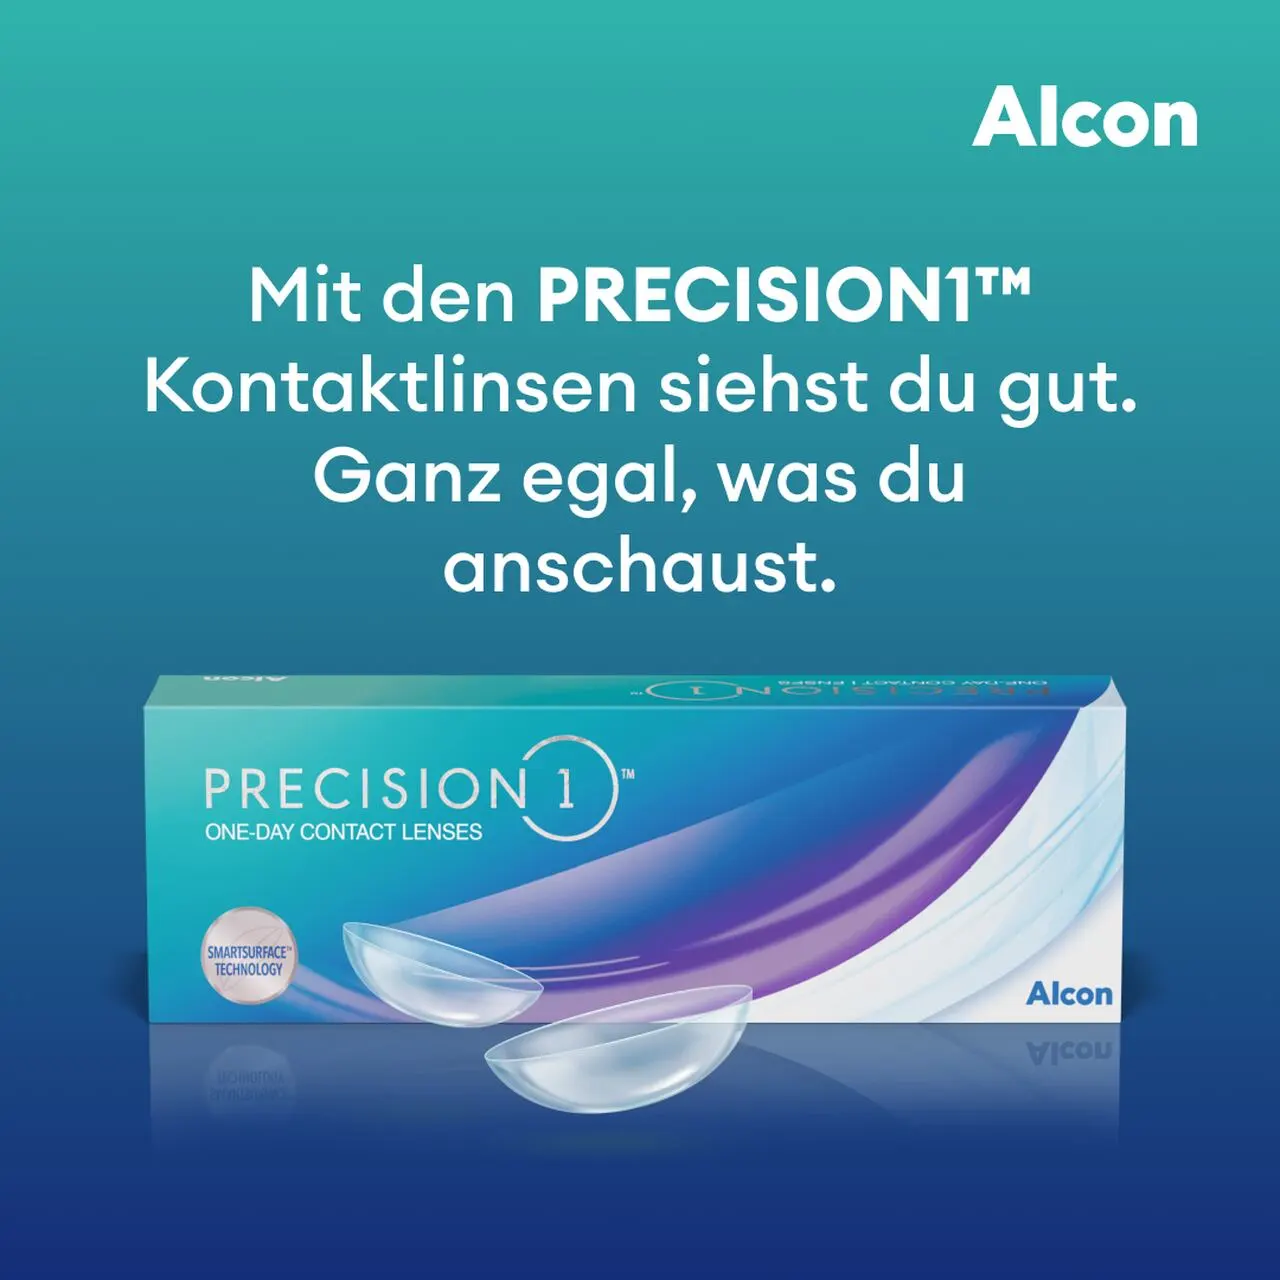 Precision 1 Kontaktlinsen von Alcon bei Neusehland